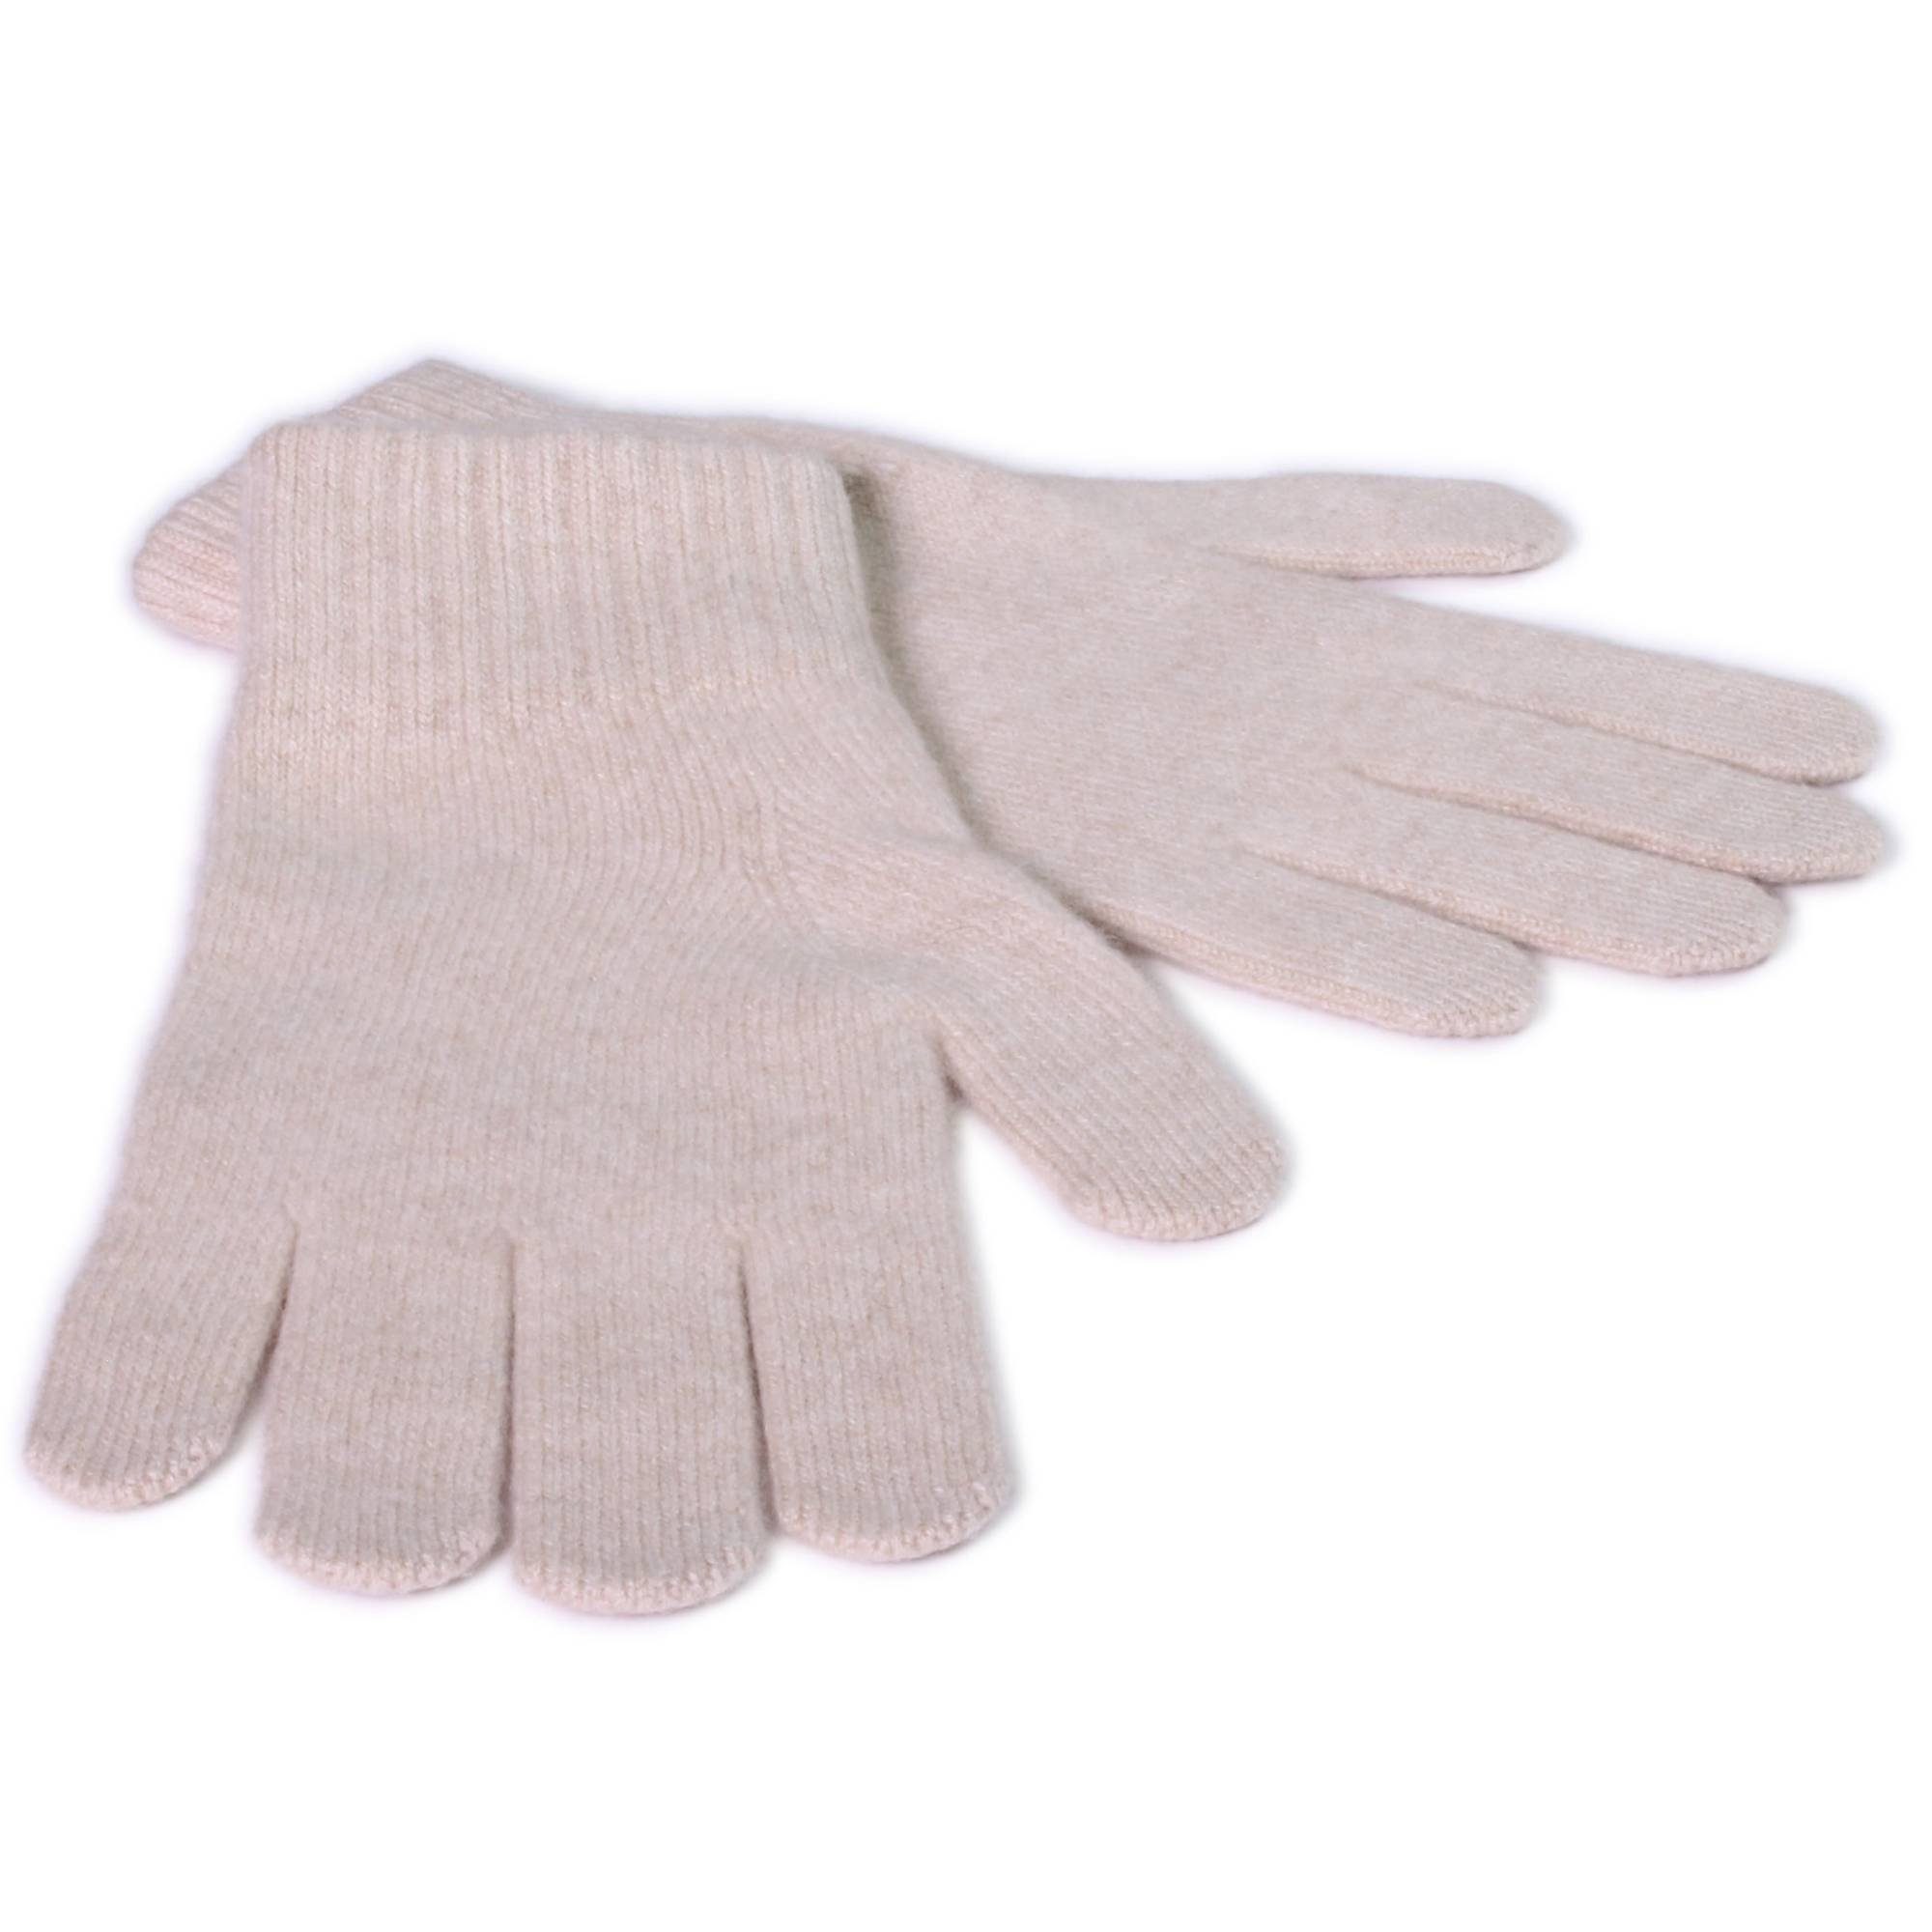 Günstiger Verkaufsstart Tumelo Strickhandschuhe Handschuhe 100% Kaschmir HerrenBeige